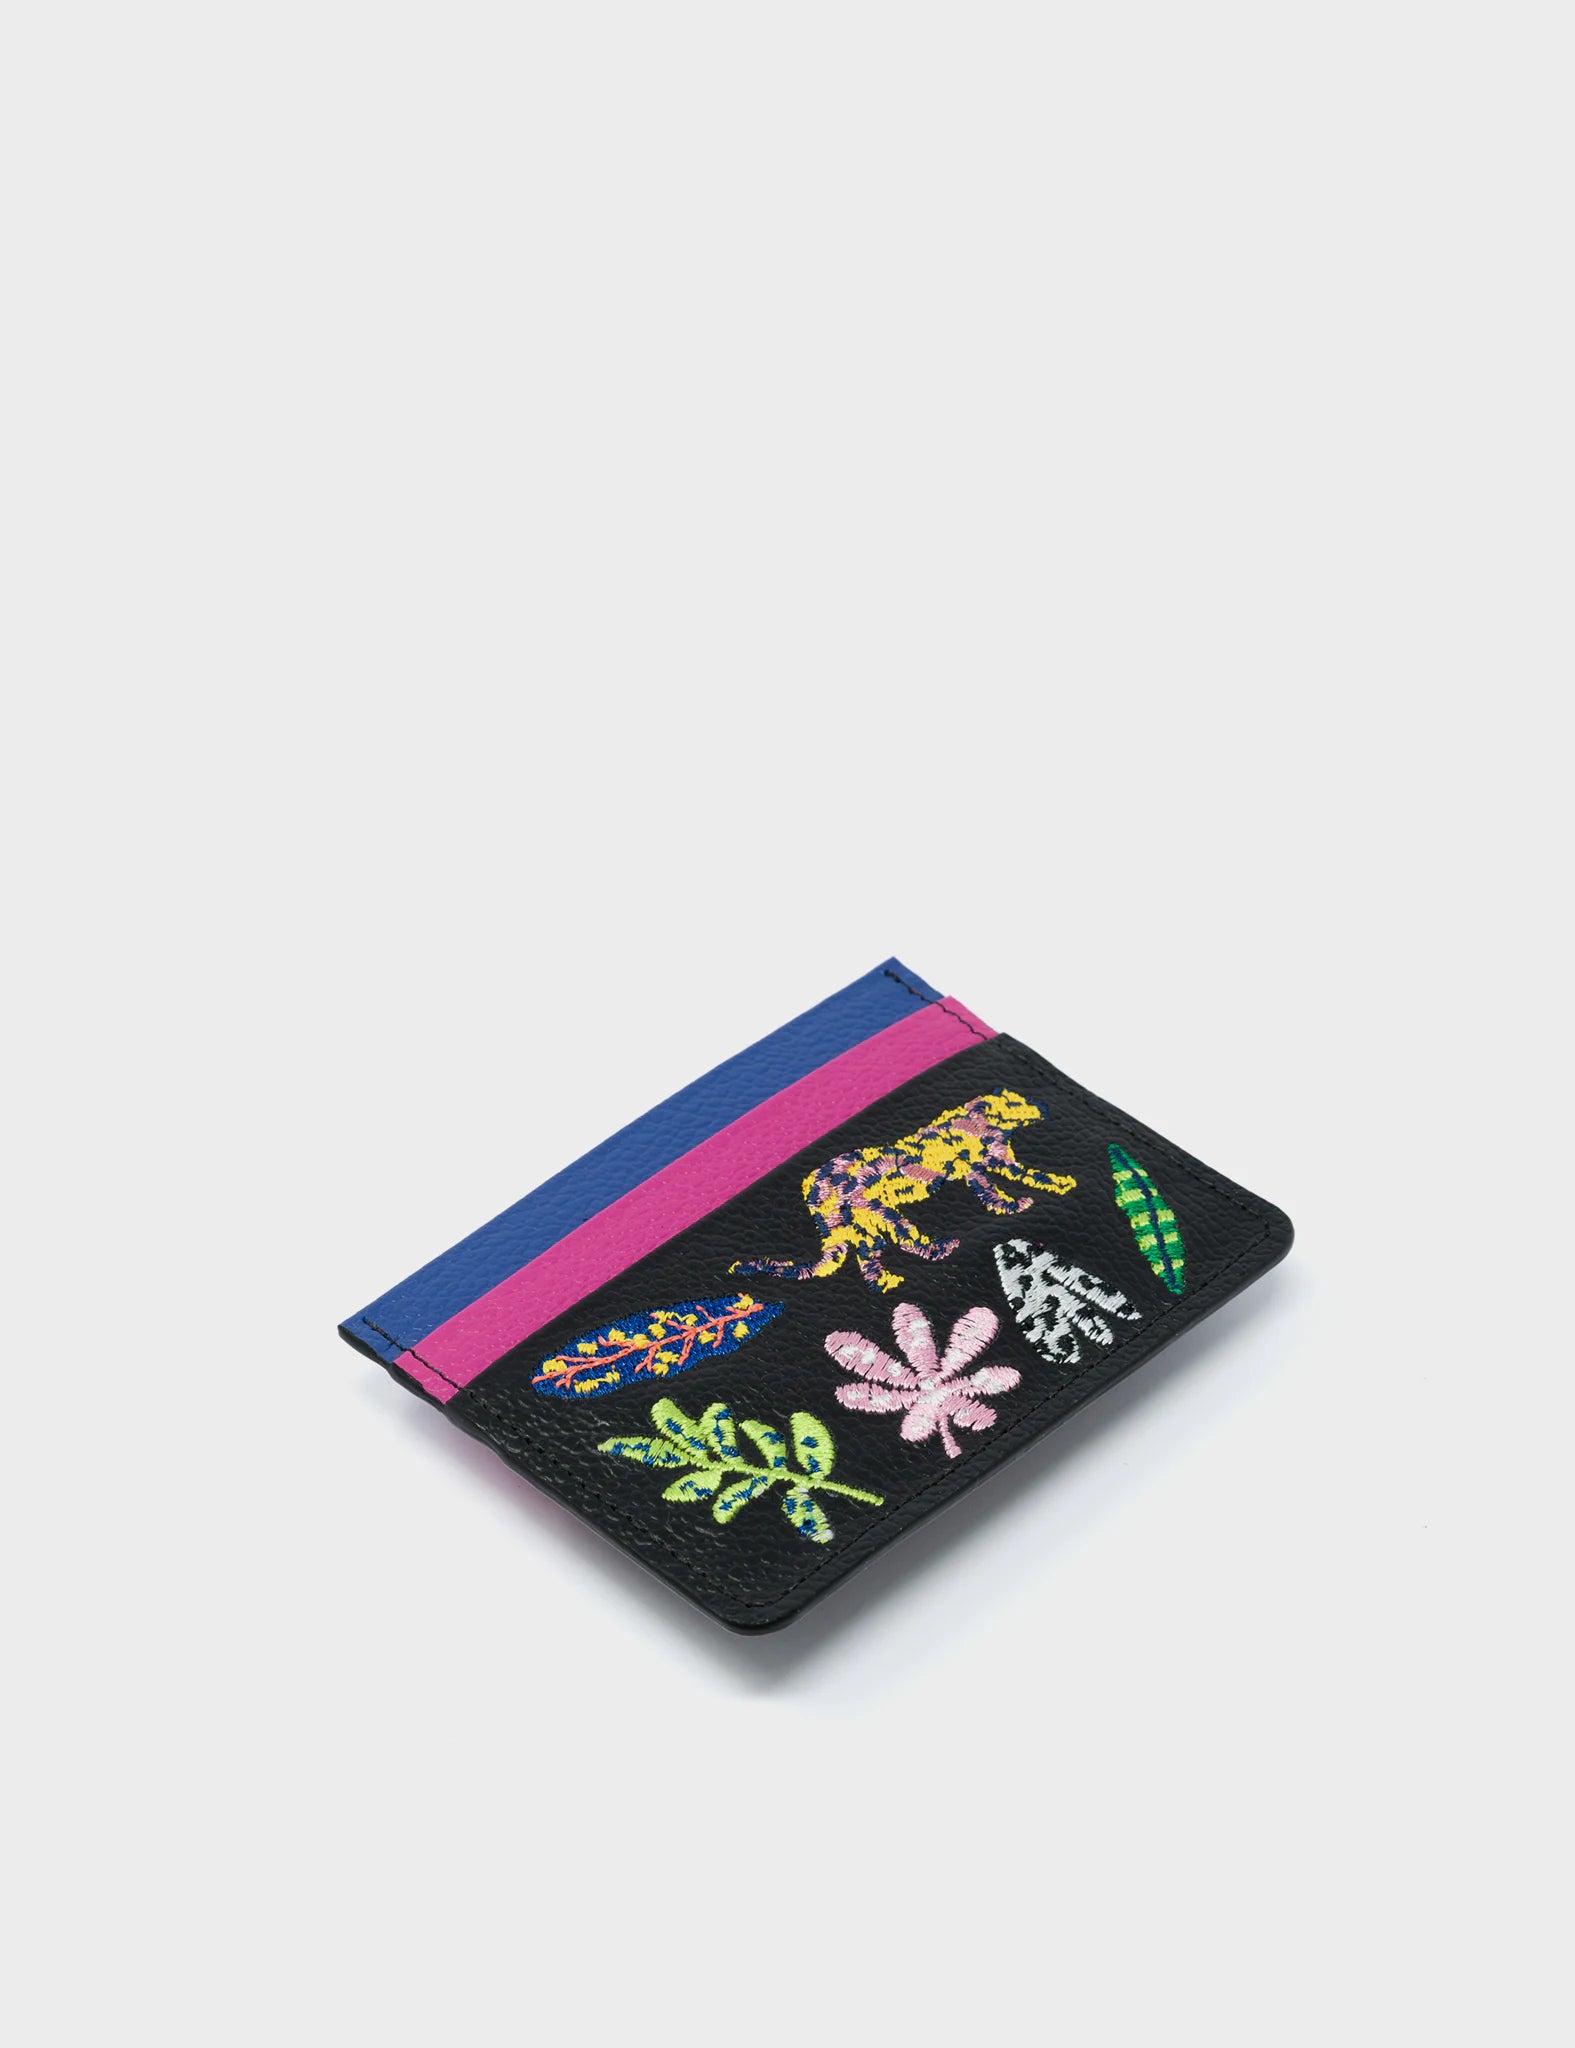 Filium Black and Violet Leather Cardholder - El Trópico Embroidery Design - Side